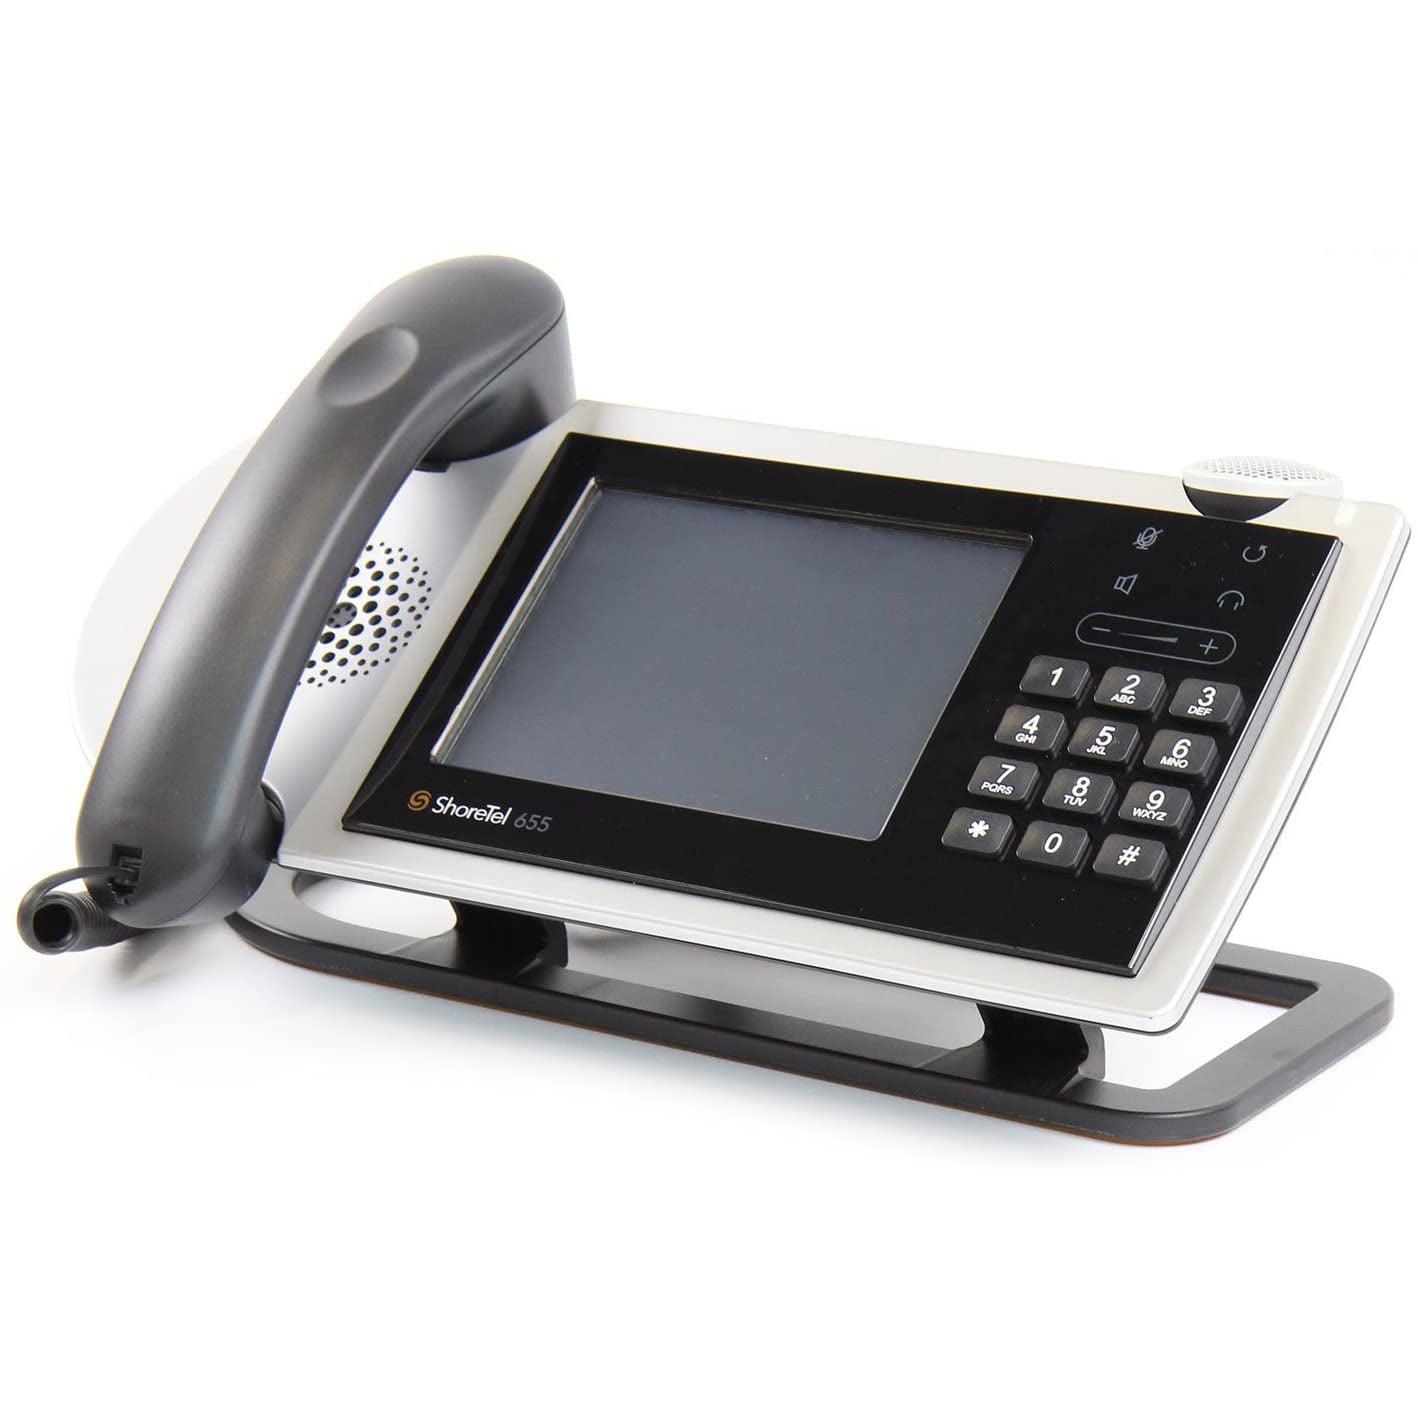 Shoretel IP655 Phone (IP655) Refurb